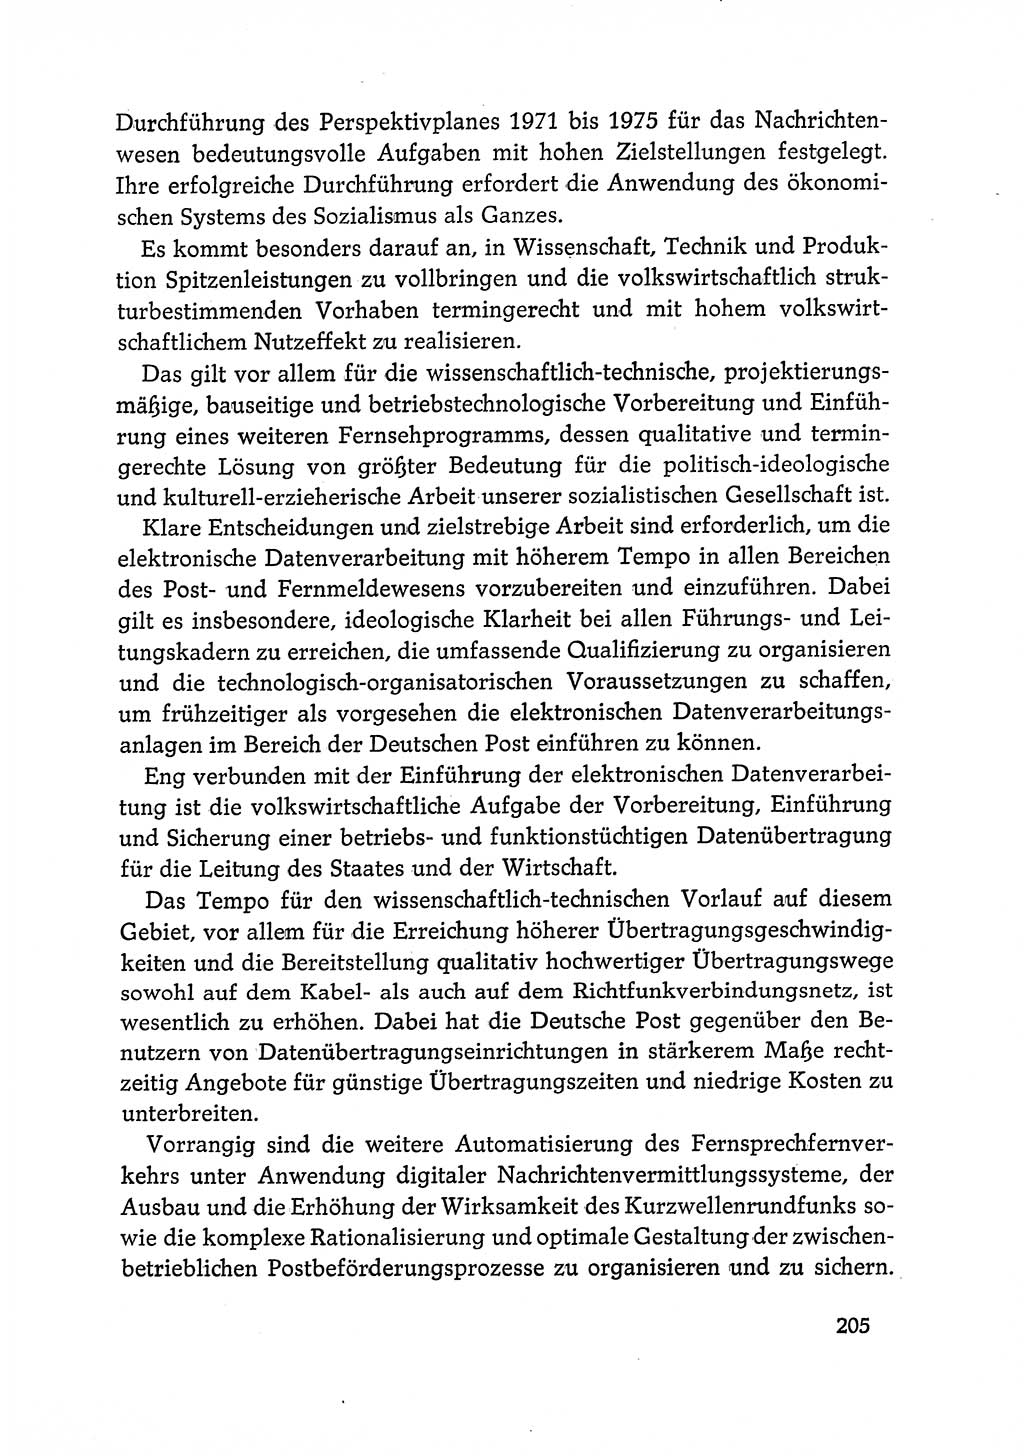 Dokumente der Sozialistischen Einheitspartei Deutschlands (SED) [Deutsche Demokratische Republik (DDR)] 1968-1969, Seite 205 (Dok. SED DDR 1968-1969, S. 205)